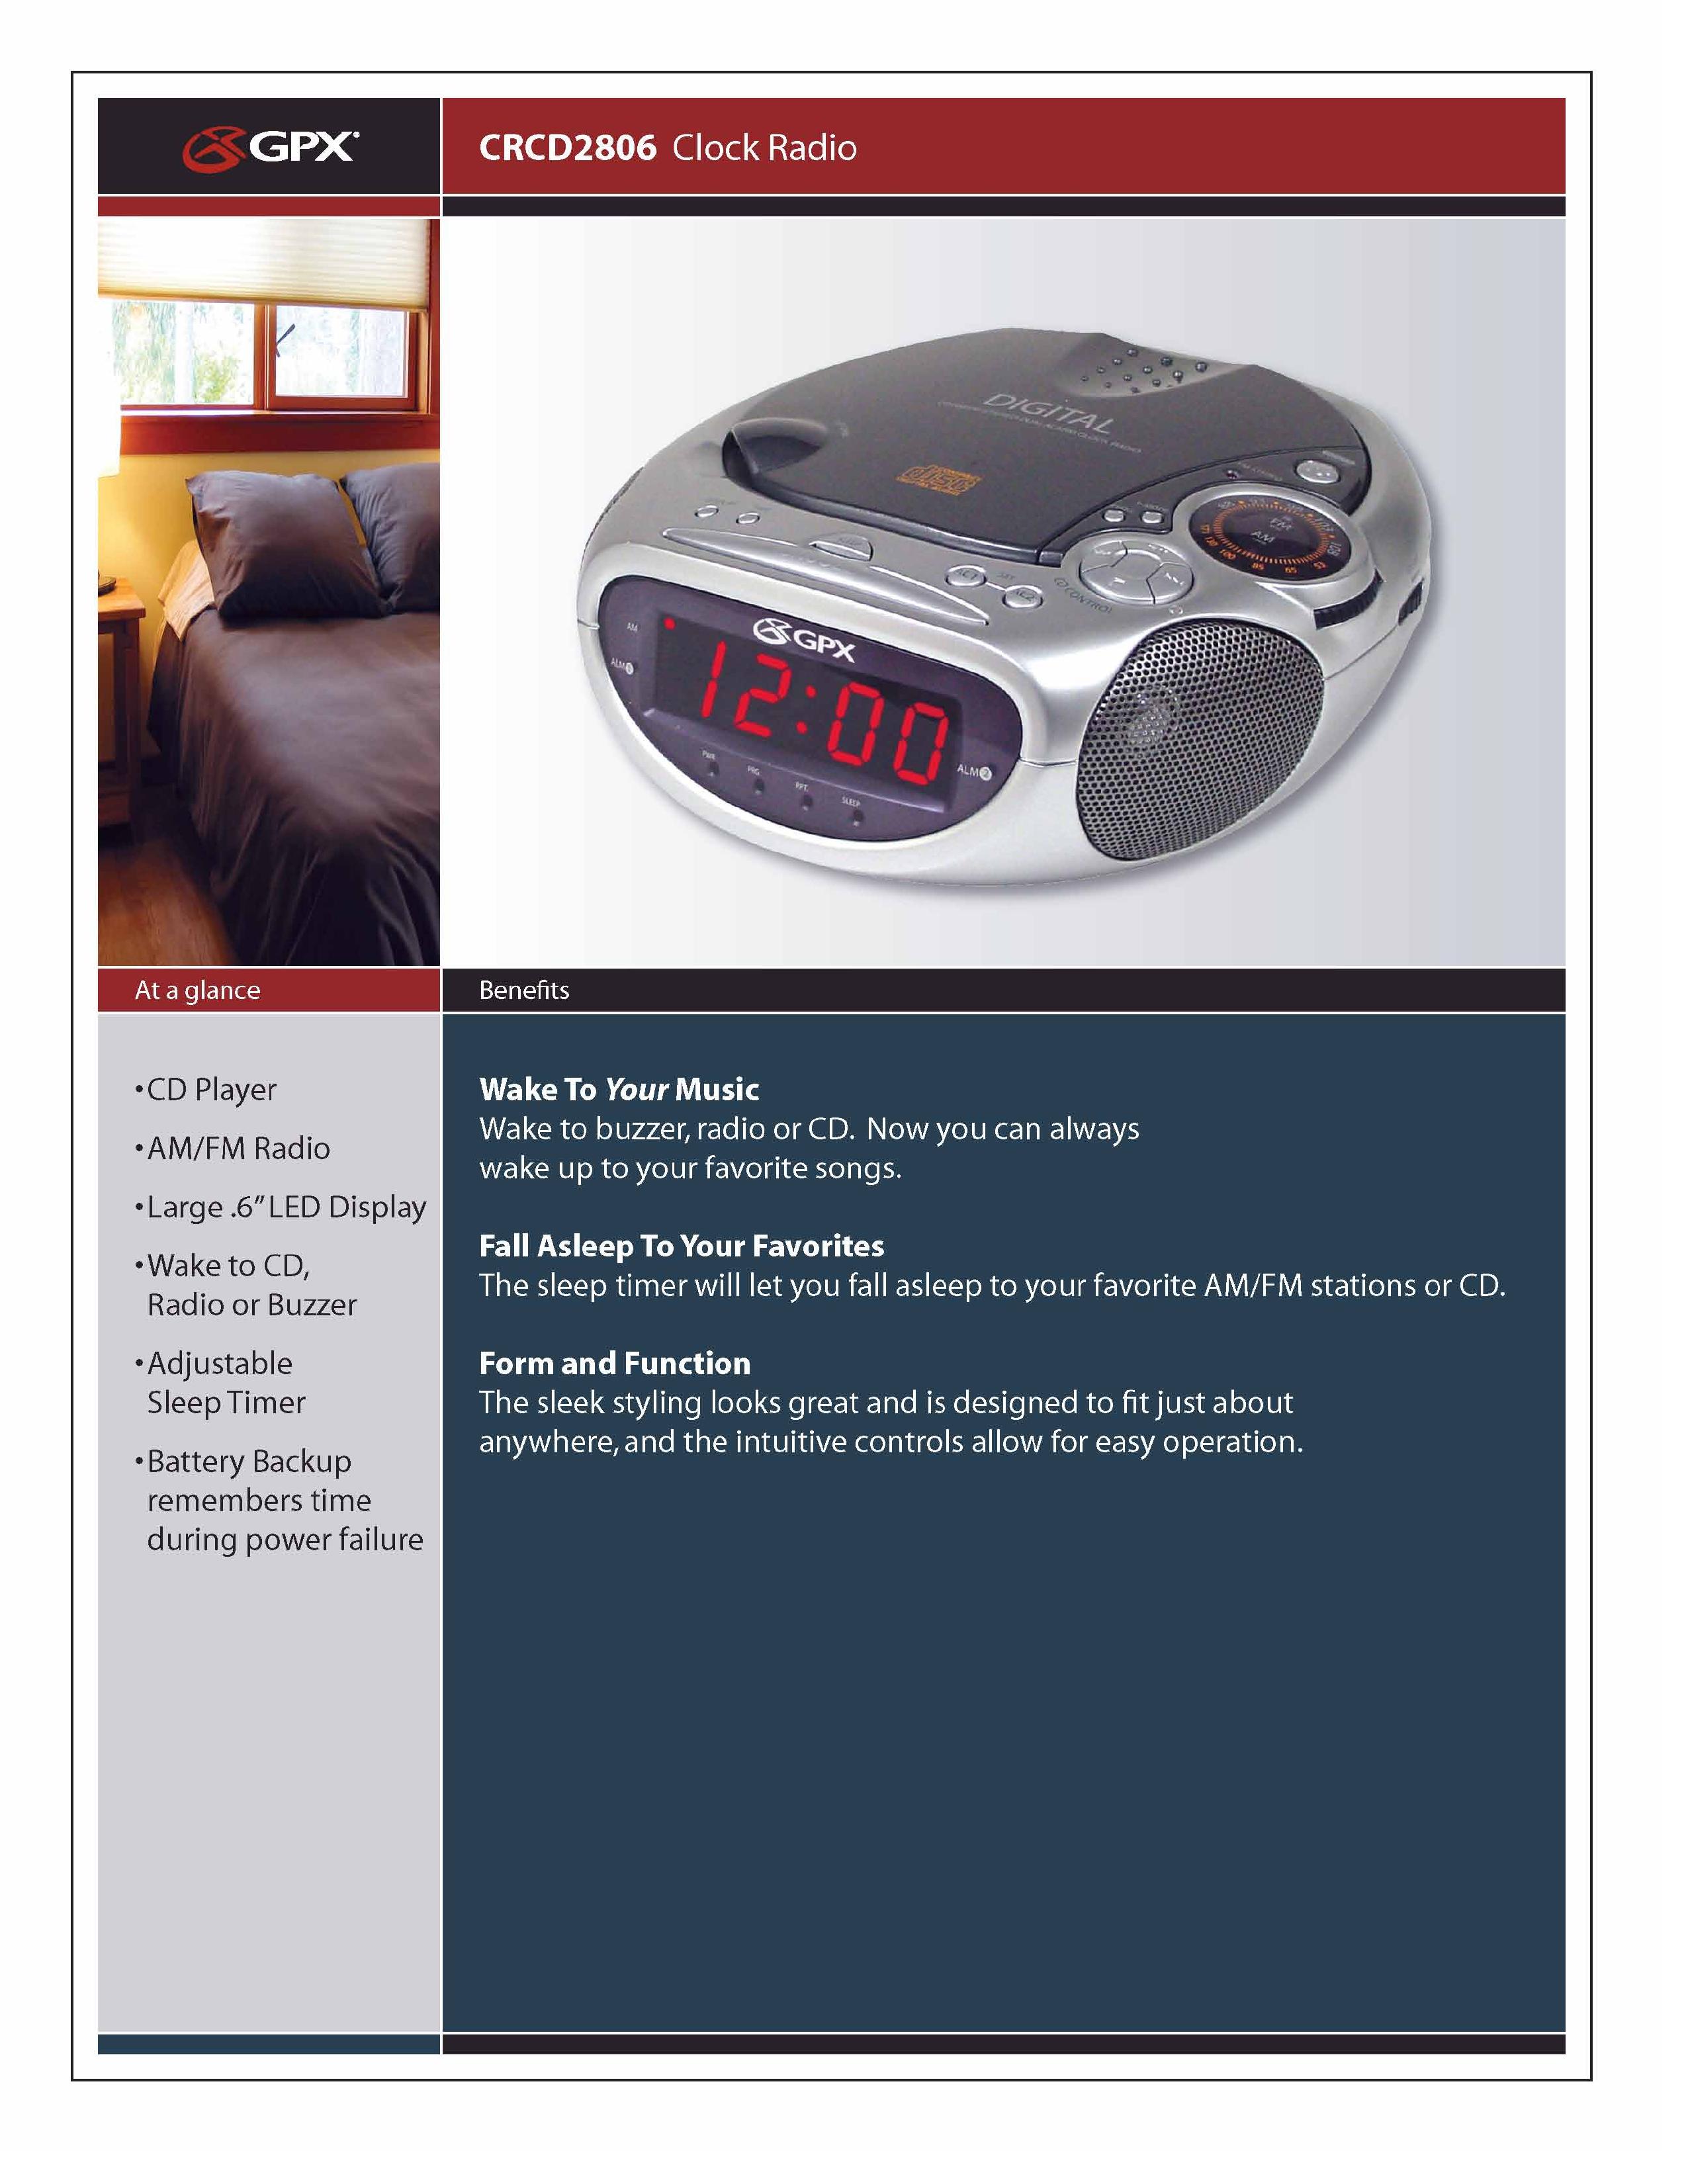 GPX CRCD2806 Clock Radio User Manual